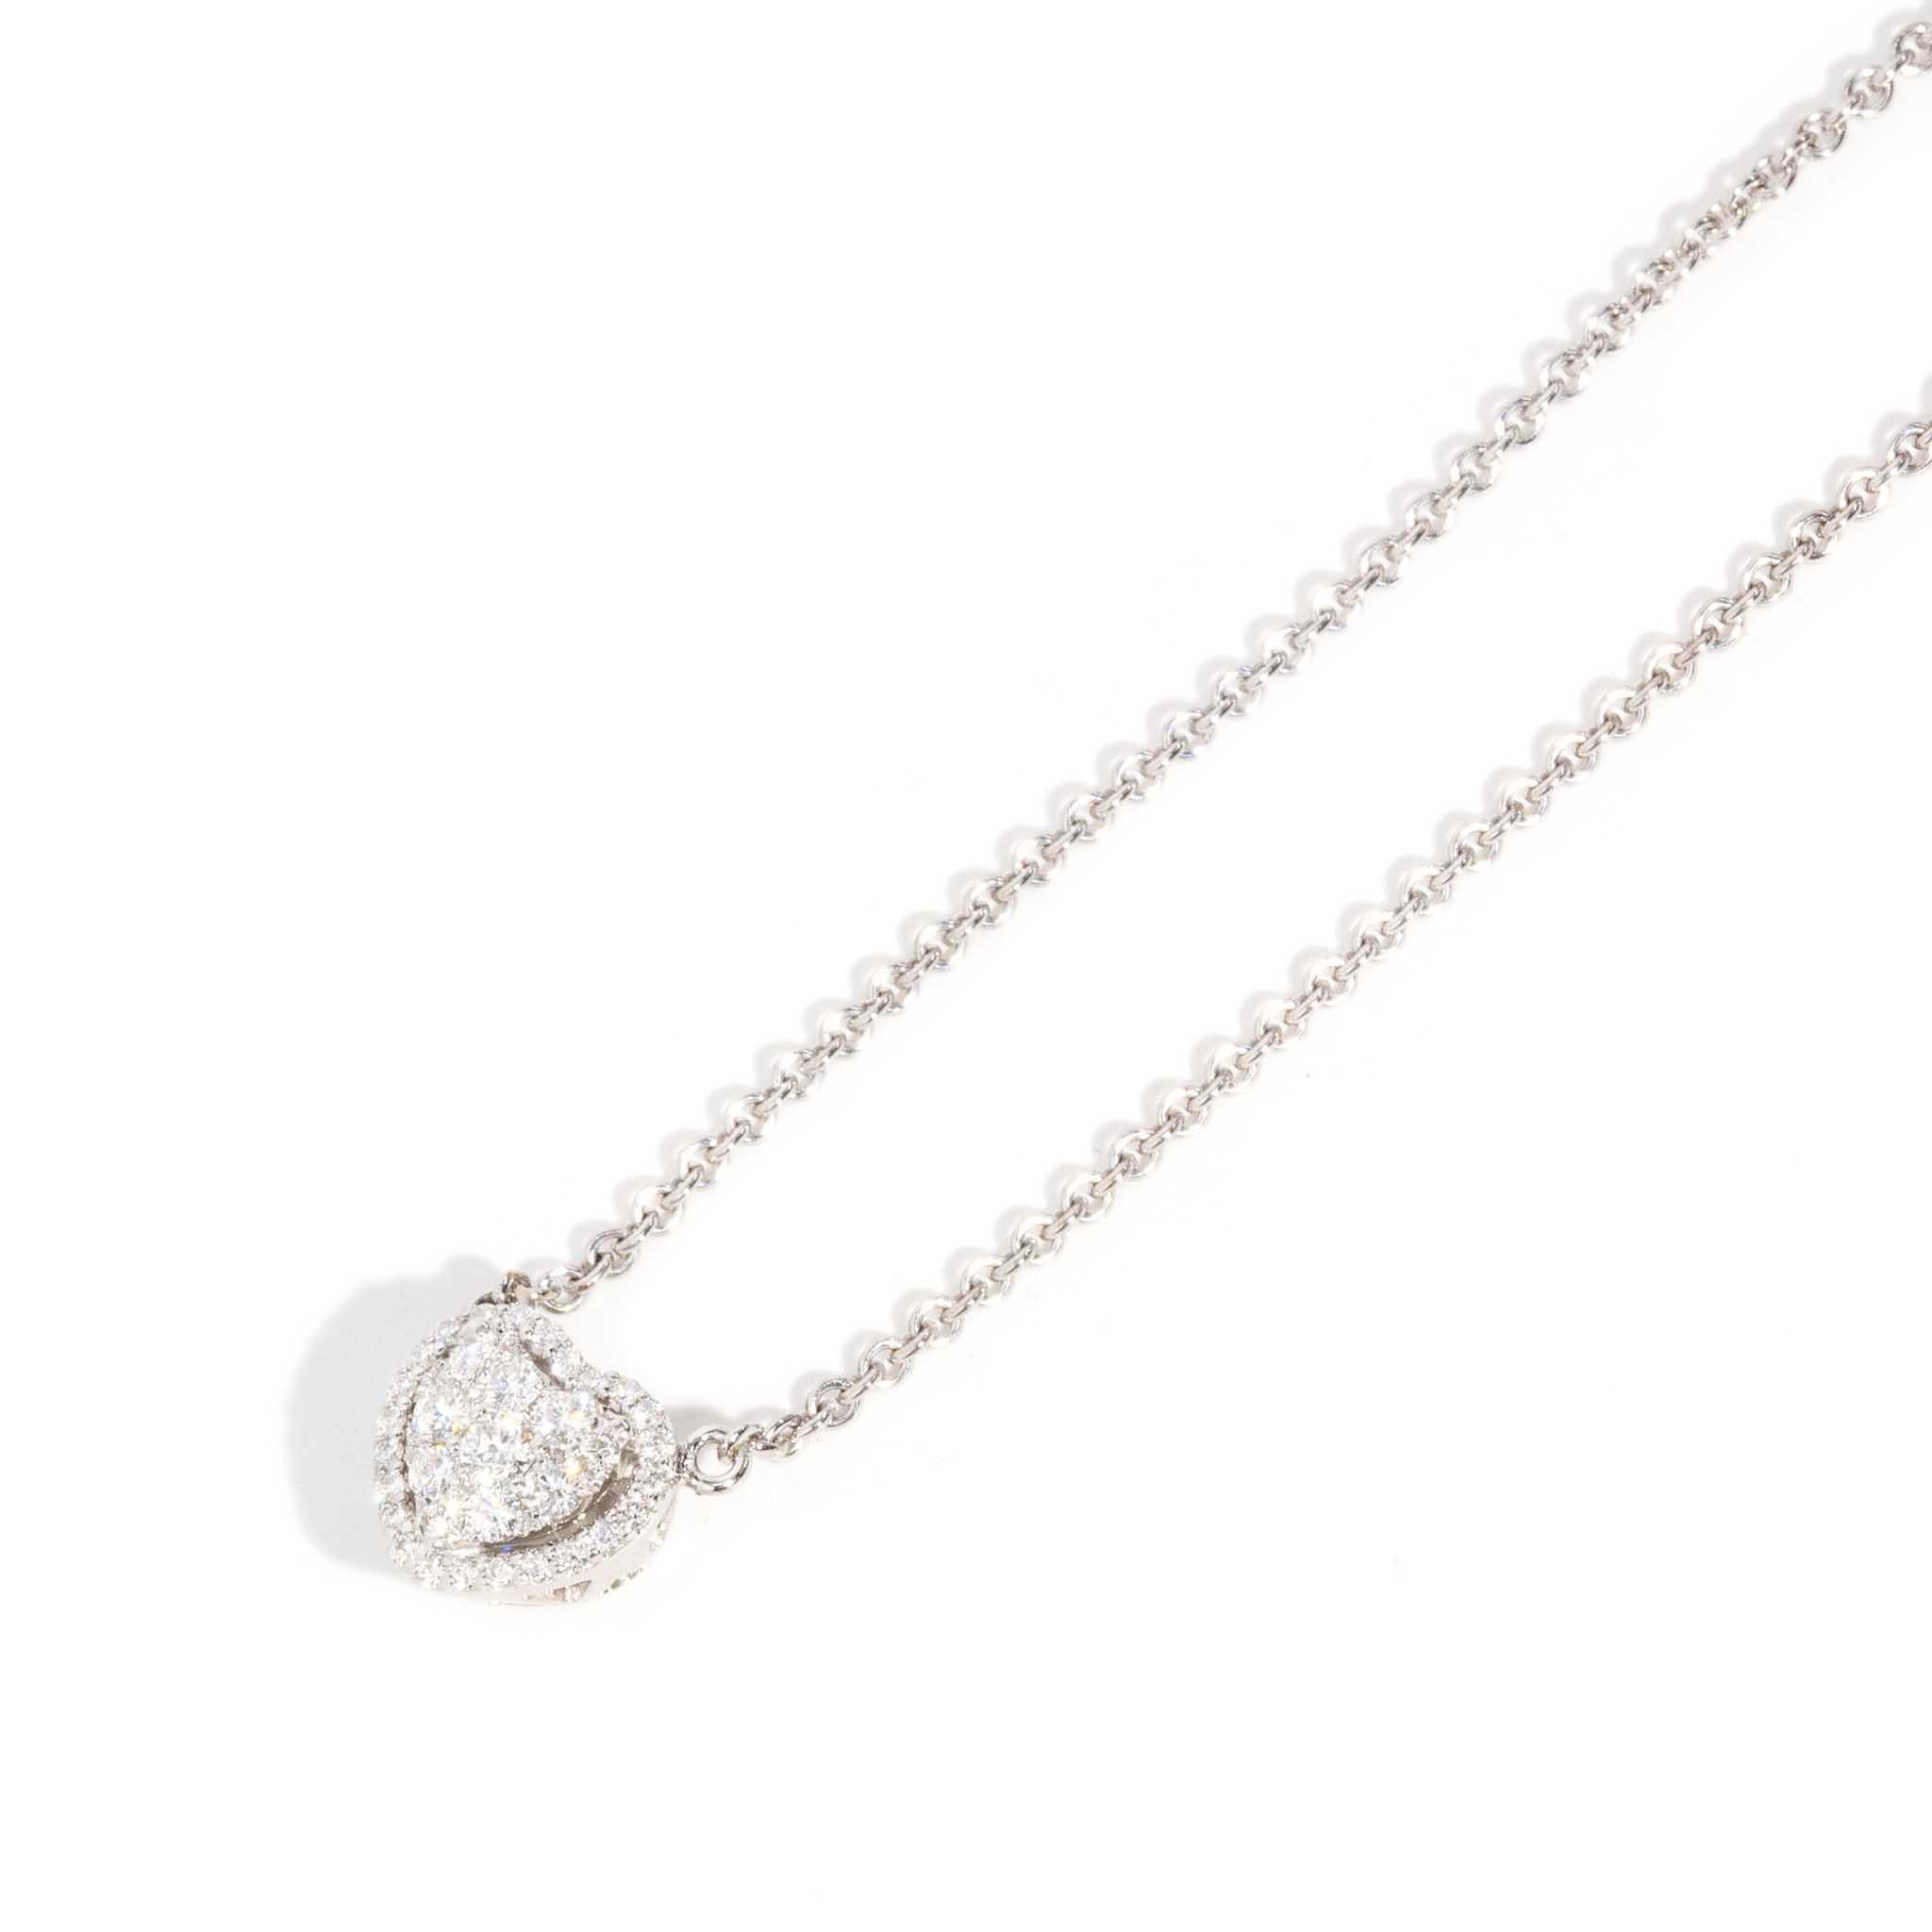 Brilliant Cut Contemporary Brilliant Diamond Heart Pendant & Cable Chain 18 Carat White Gold For Sale